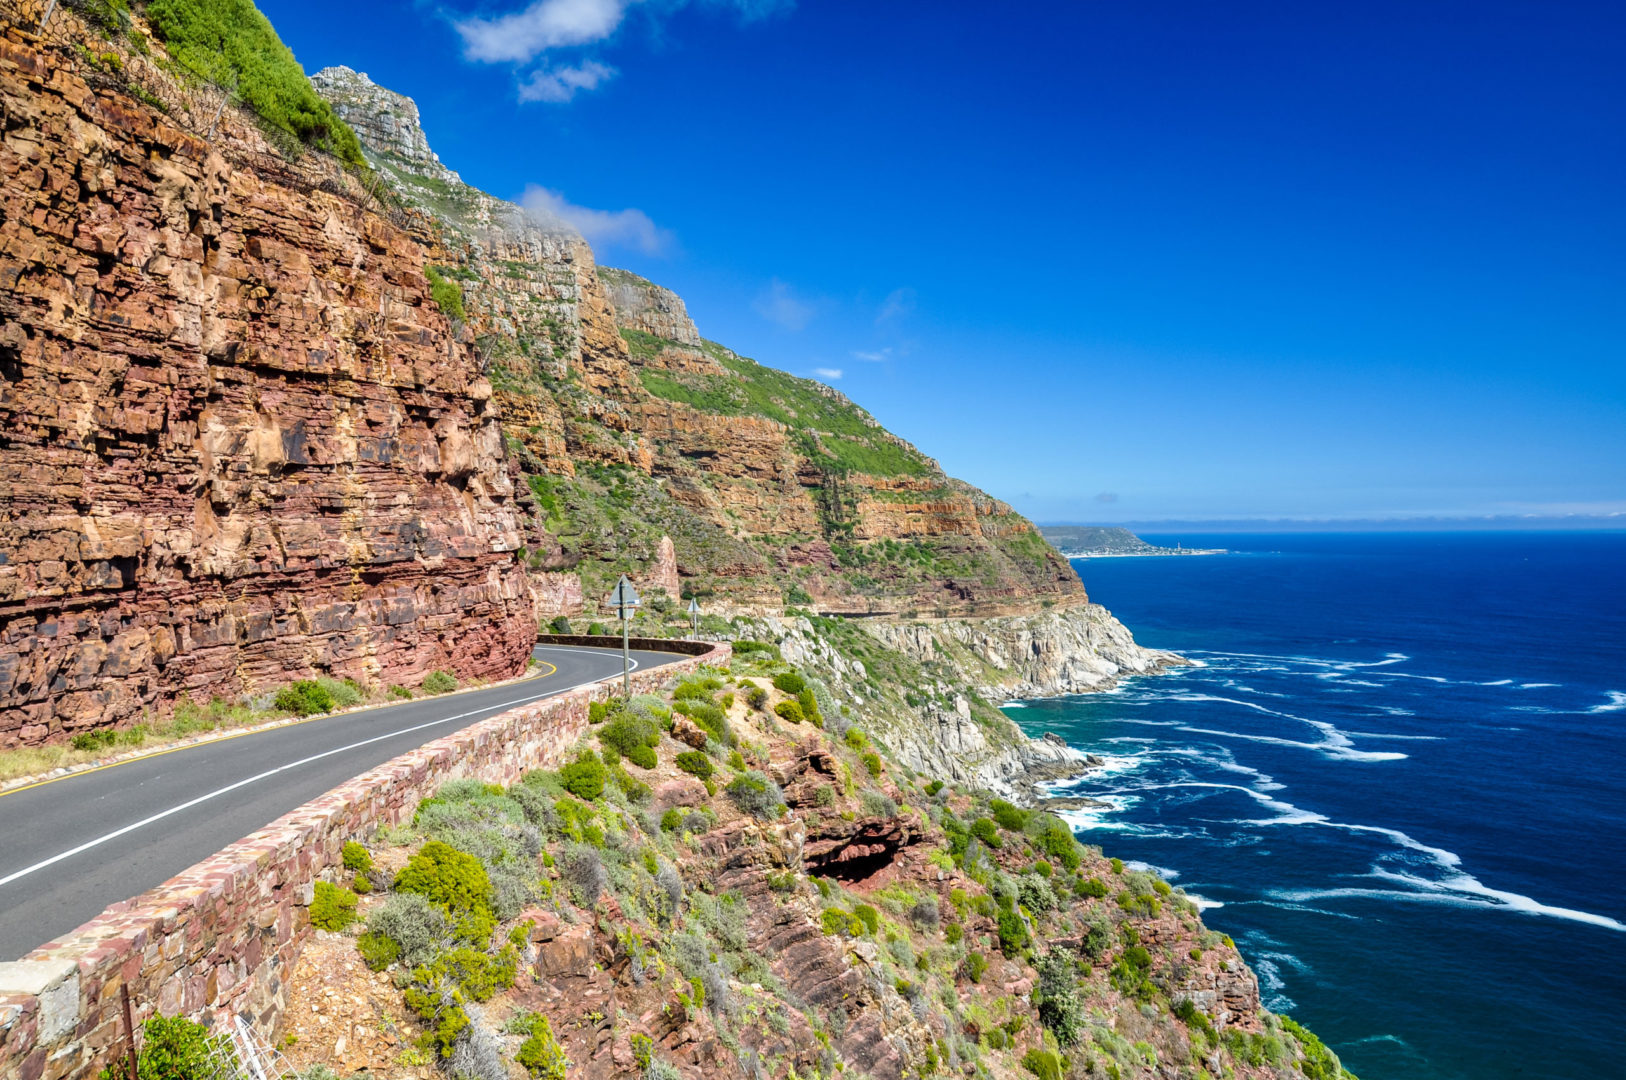 Küstenstraße Chapman's Peak Drive in der Nähe von Kapstadt auf der Kap-Halbinsel, Südafrika